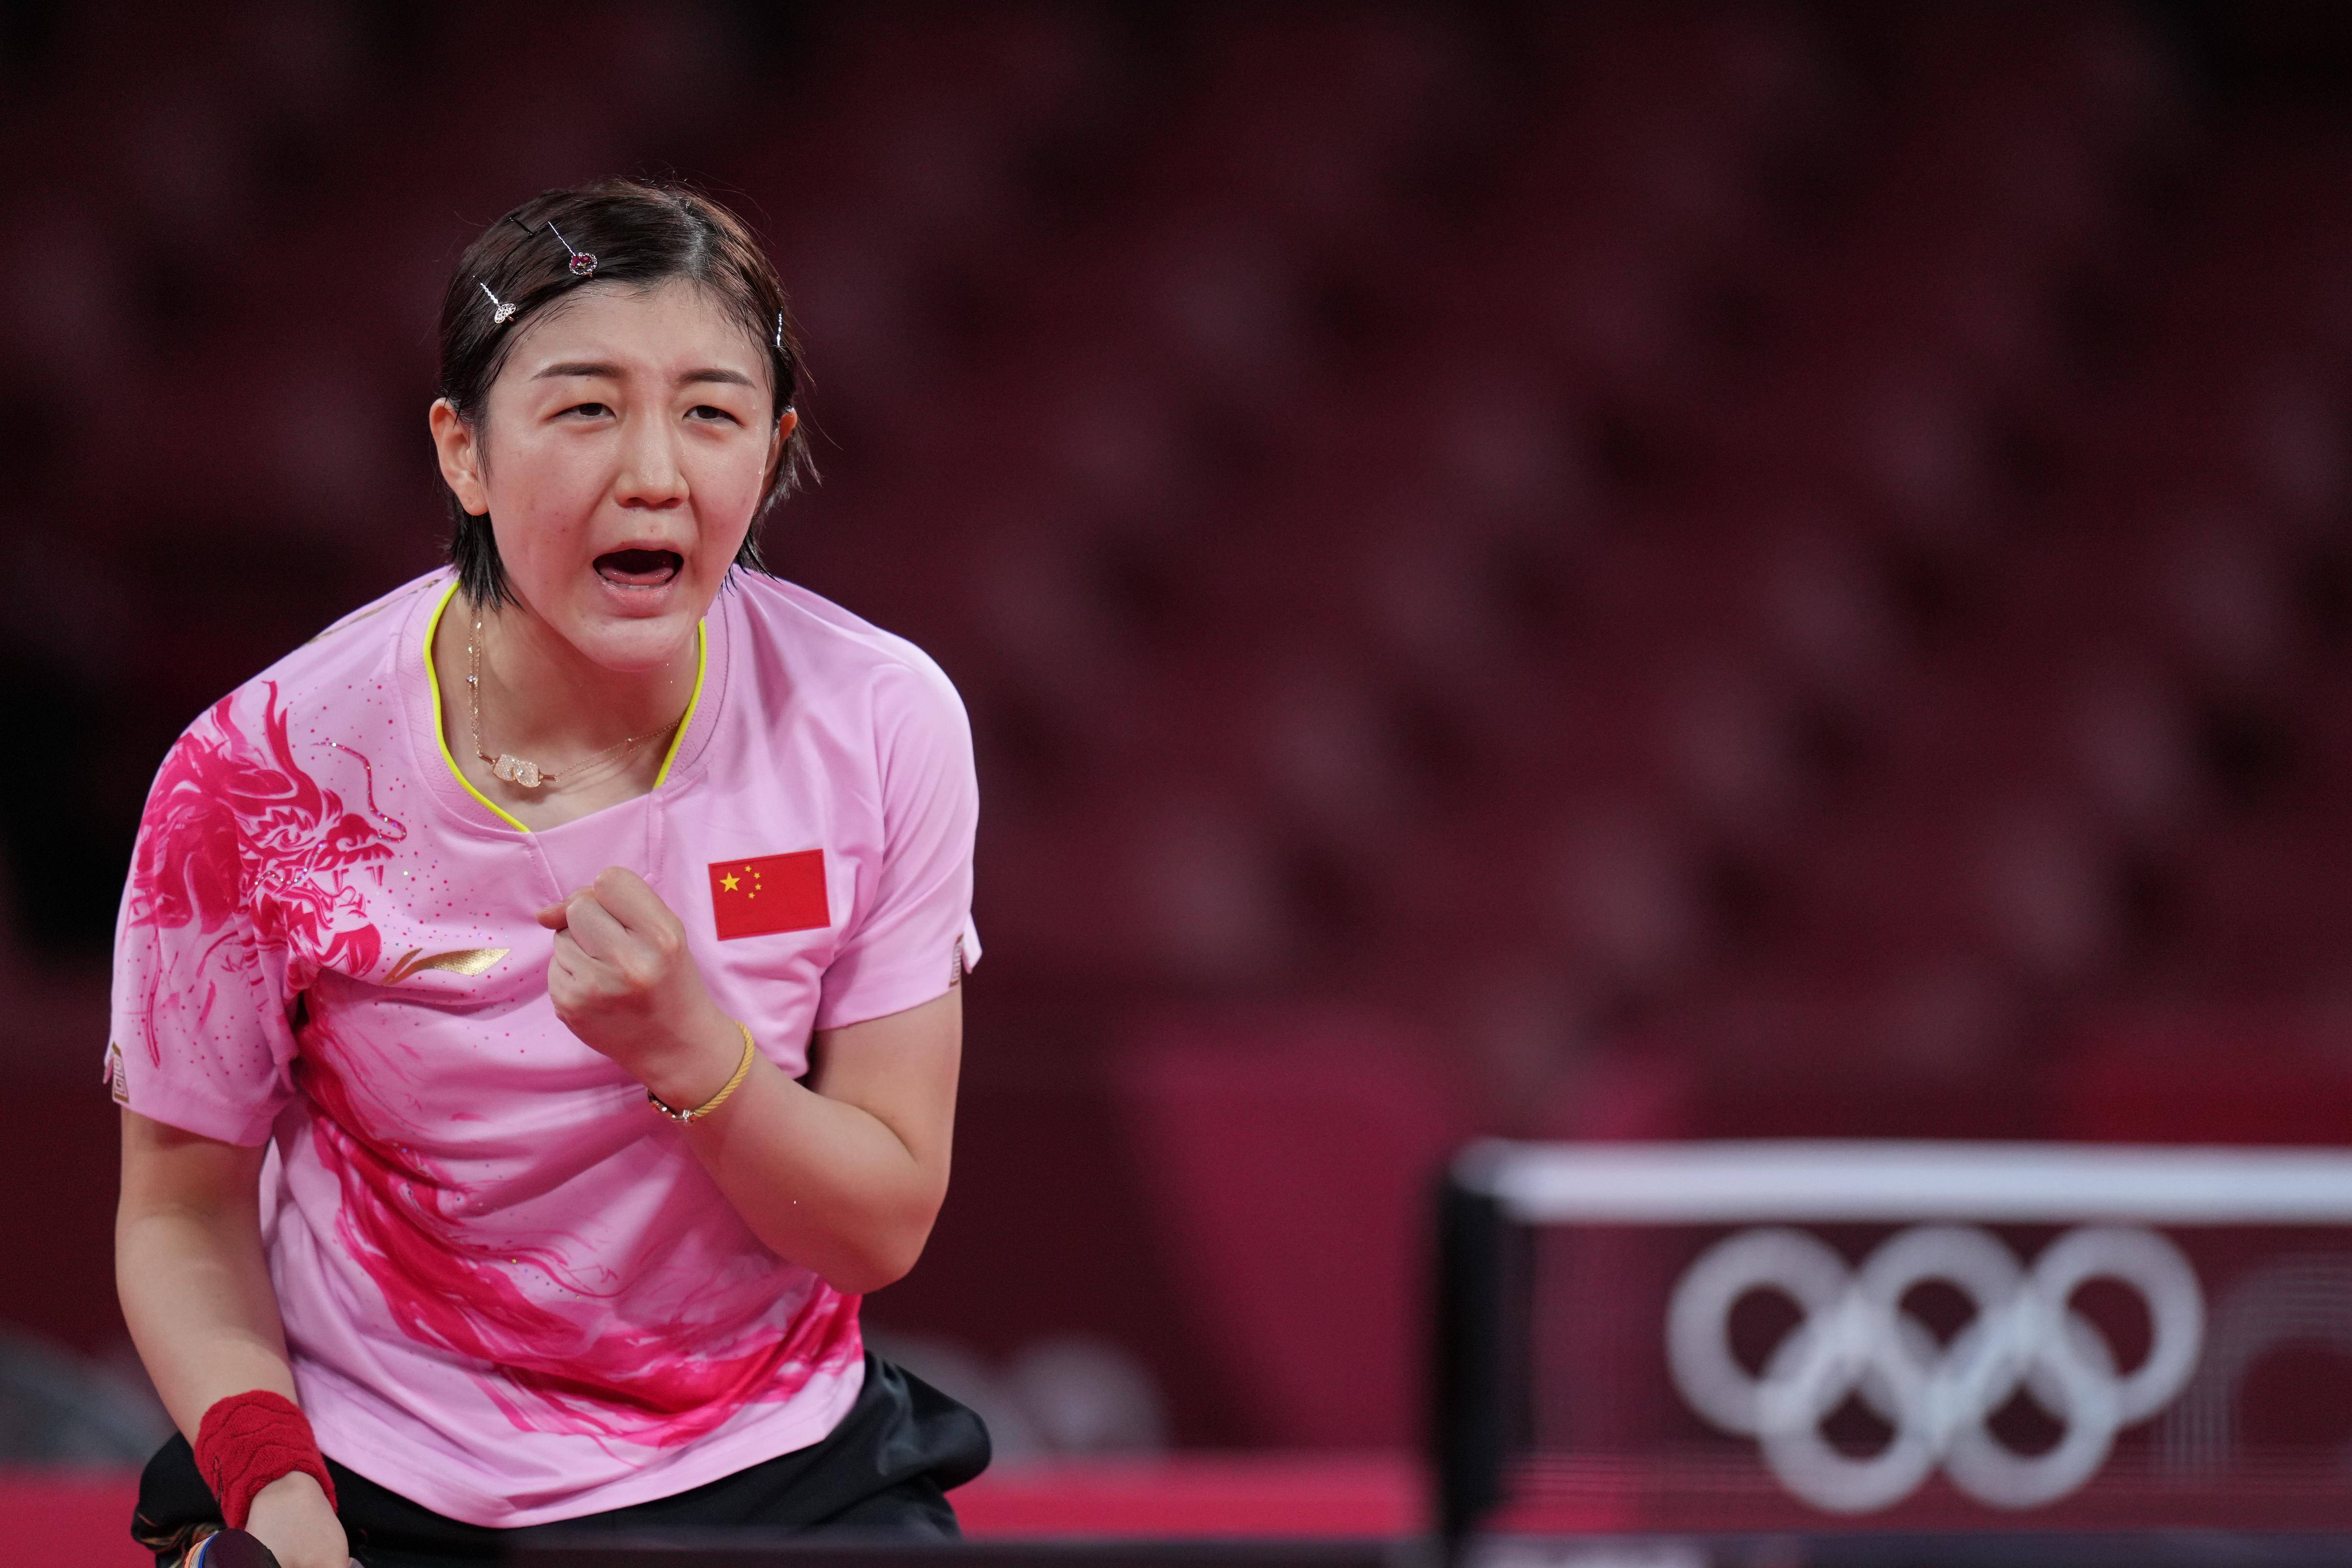 会乒乓球女子单打决赛中,中国选手陈梦以4比2战胜队友孙颖莎,夺得冠军